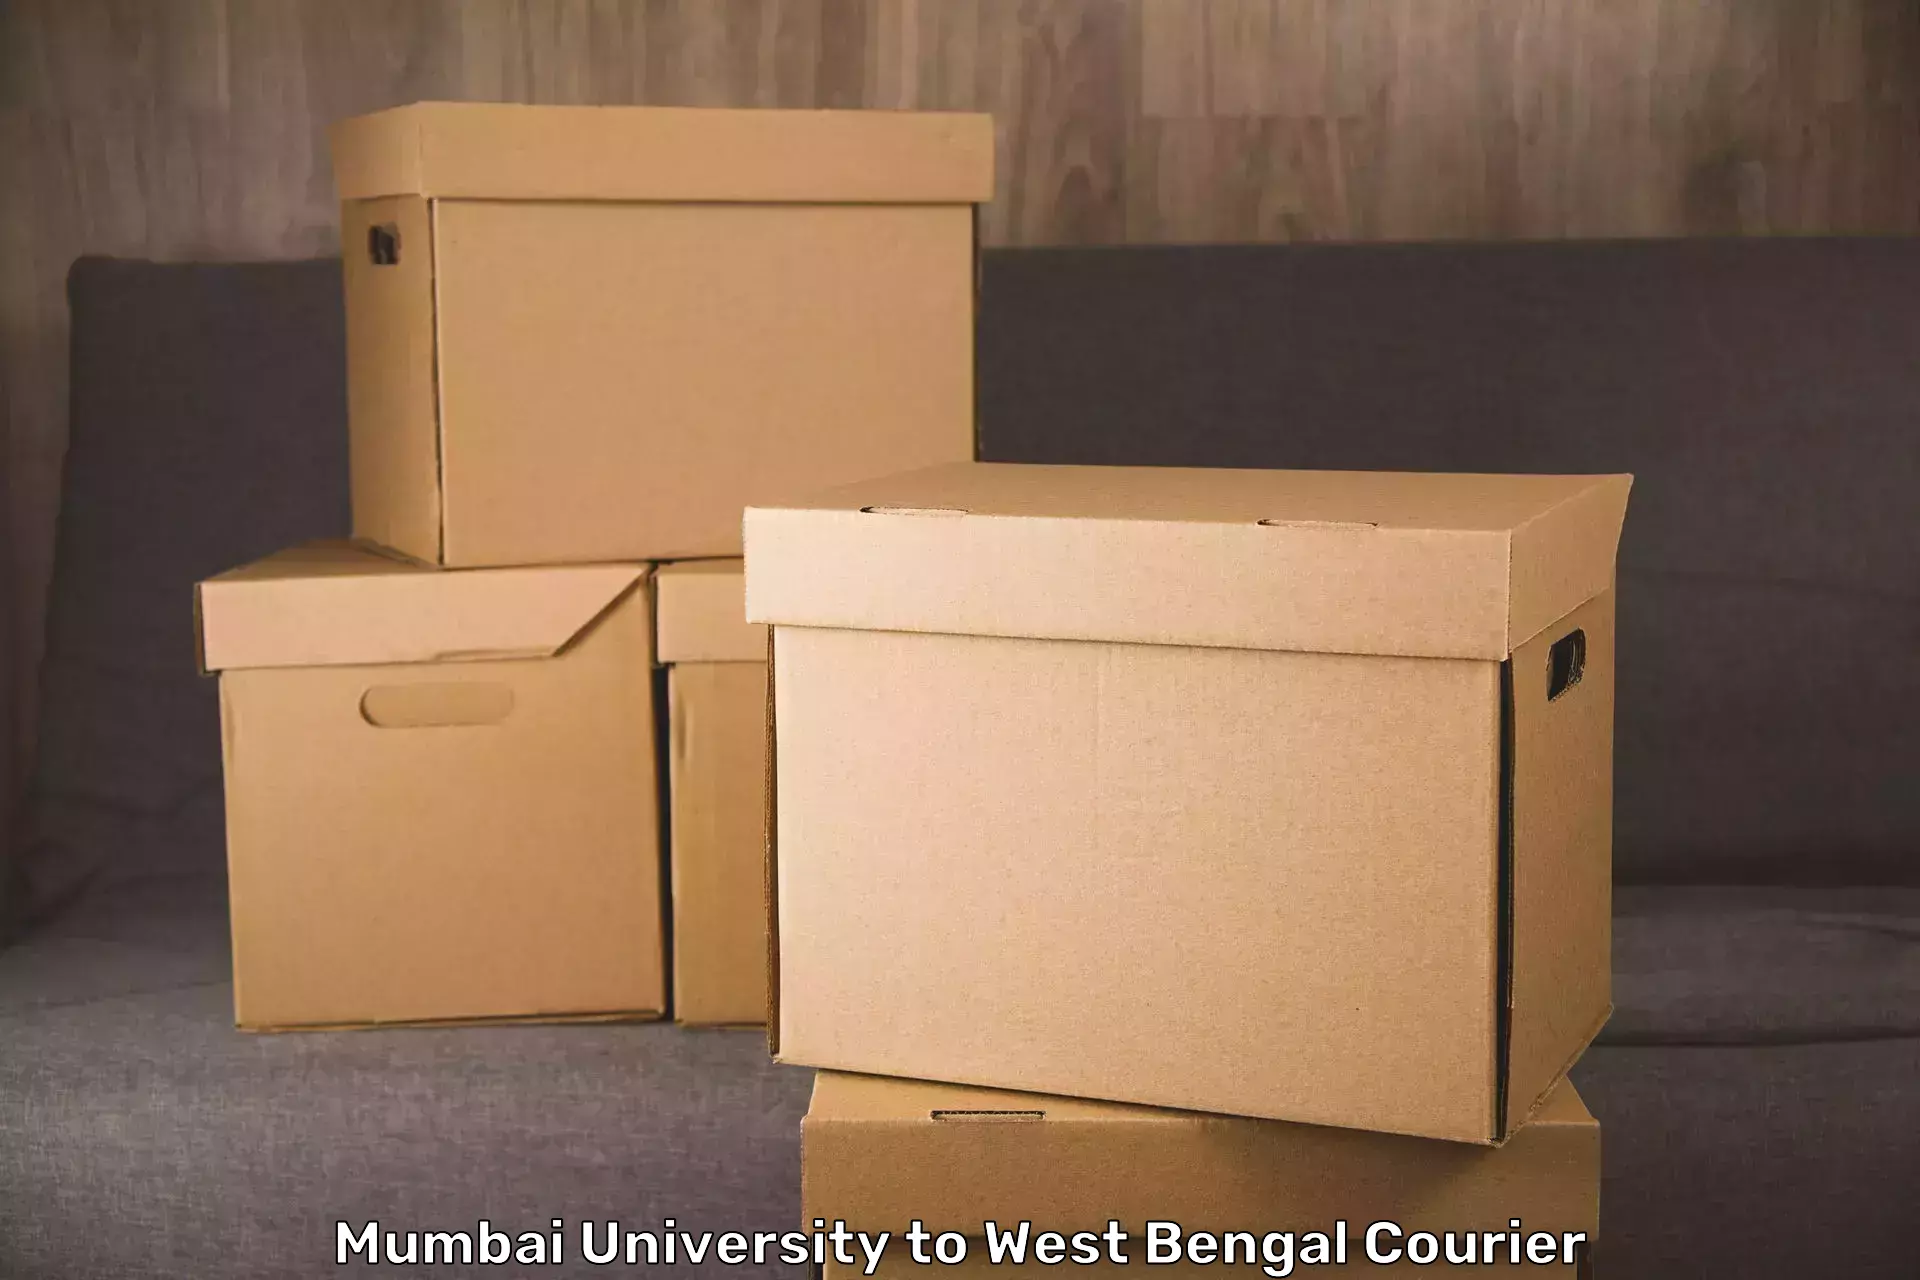 Luggage forwarding service Mumbai University to West Bengal